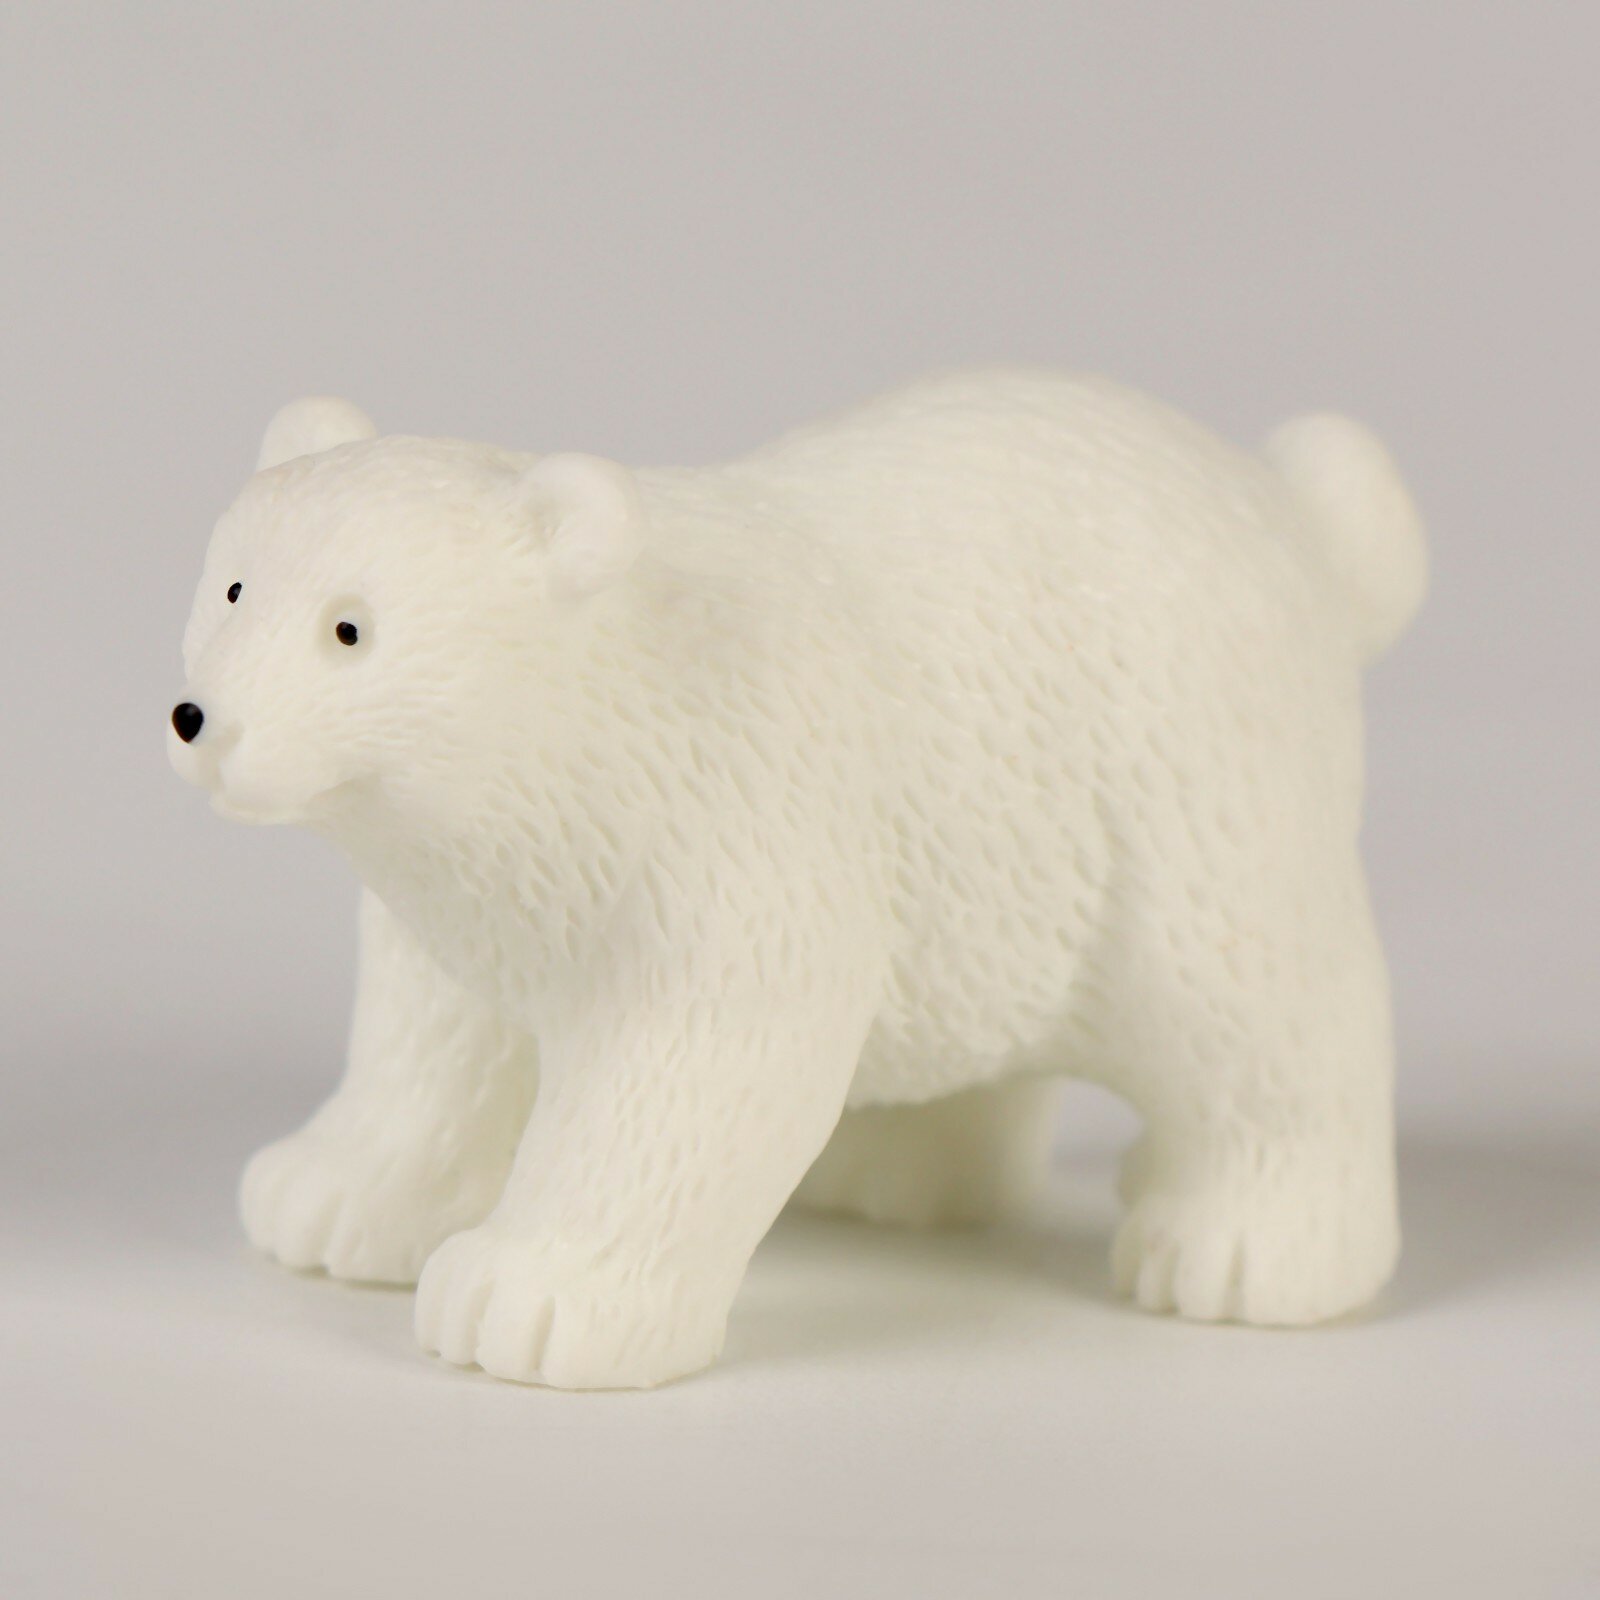 Миниатюра кукольная «Белый медведь», набор 3 шт, размер 1 шт. — 4 × 2 × 3 см